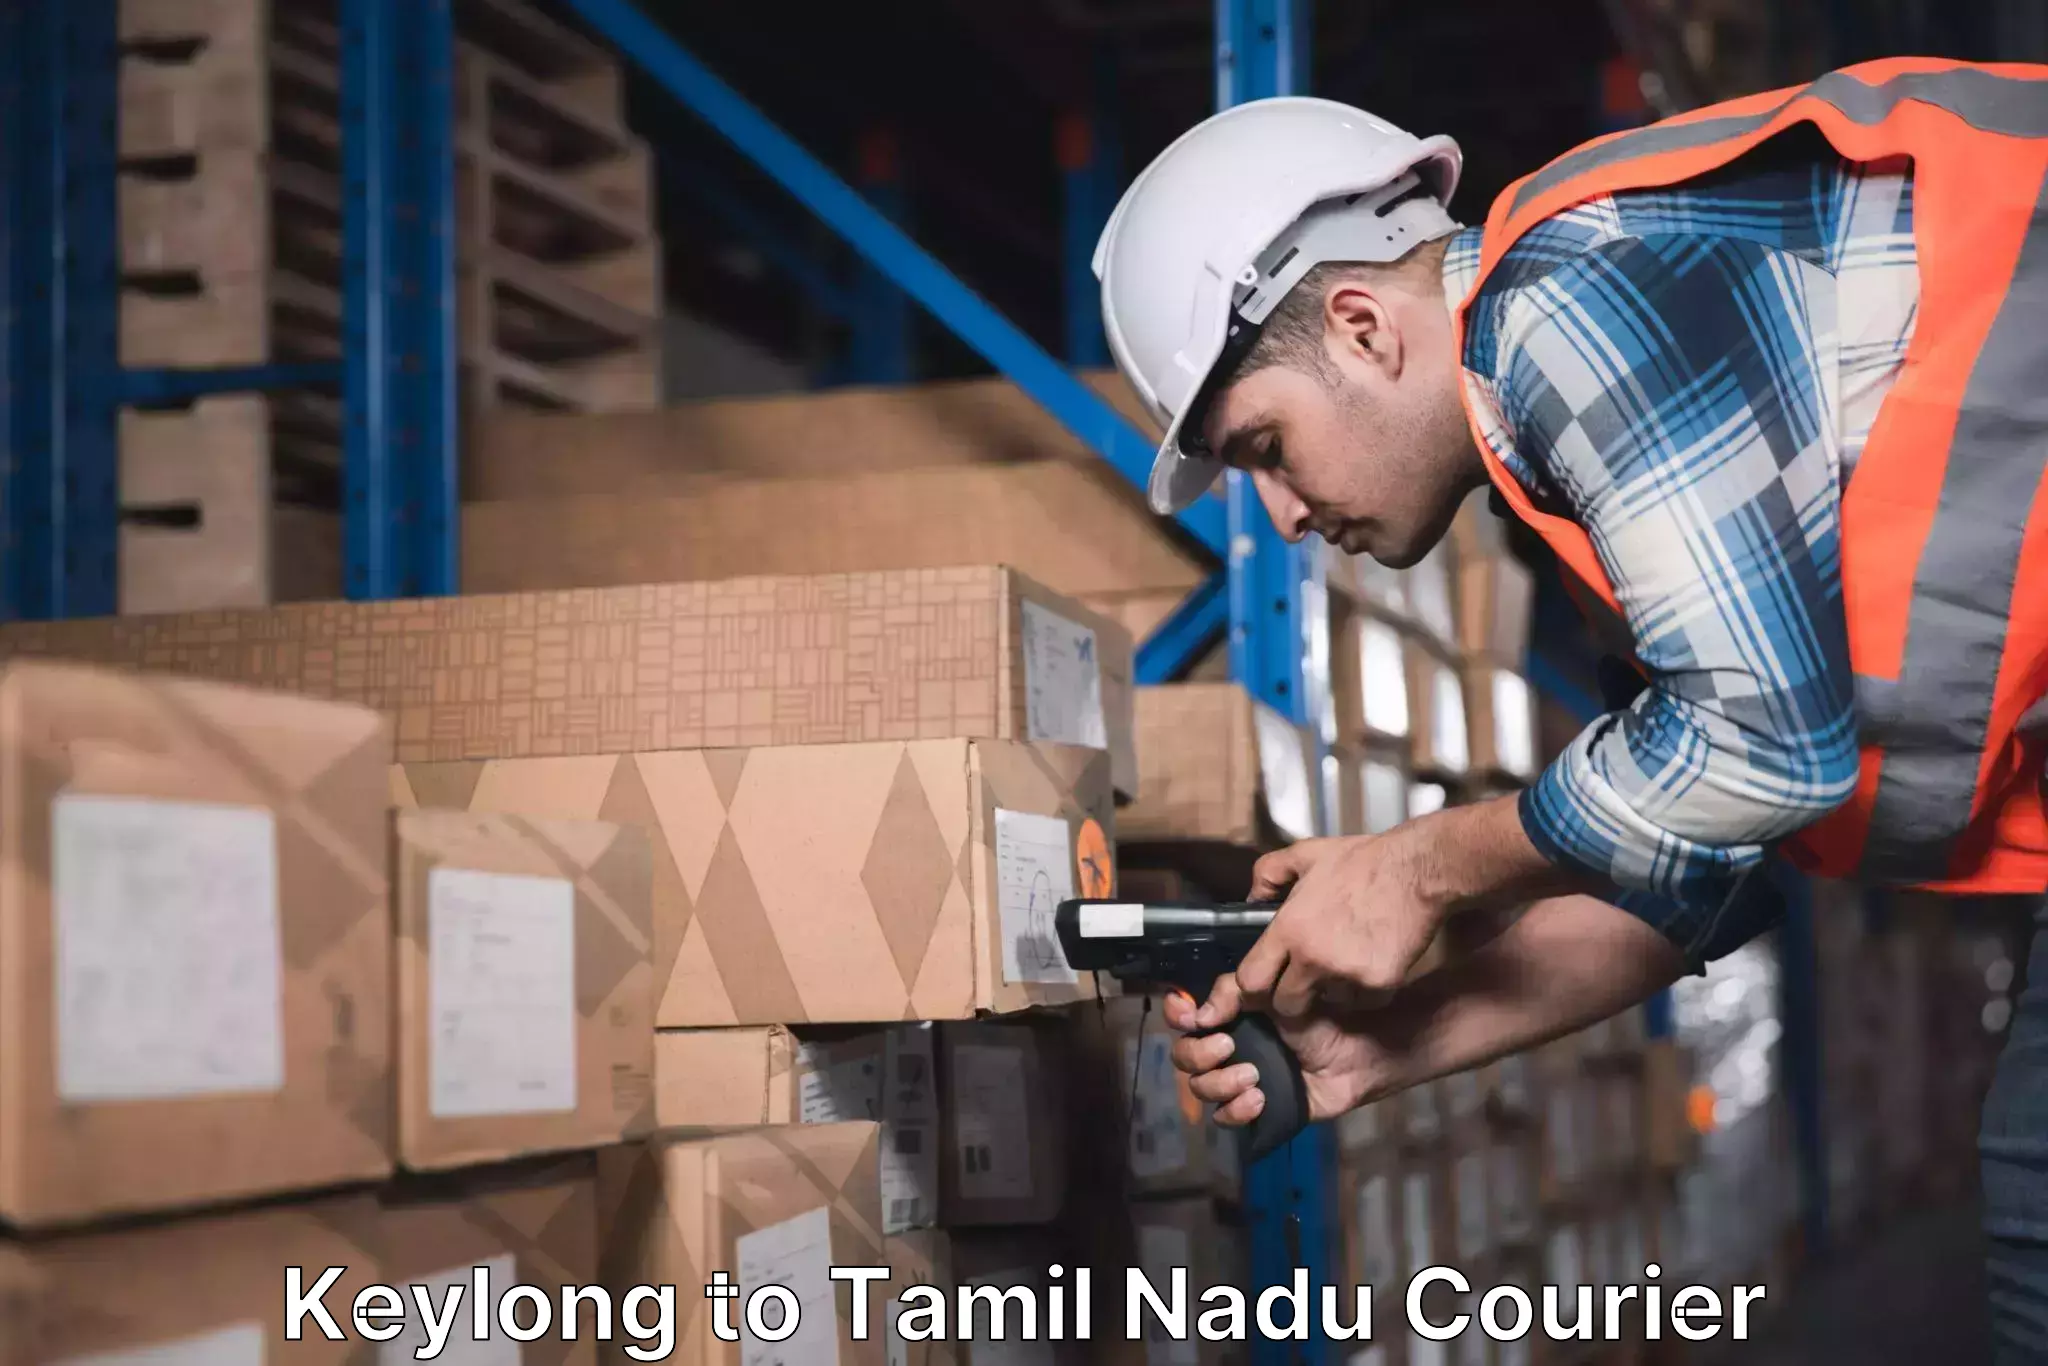 Express logistics providers Keylong to Tamil Nadu